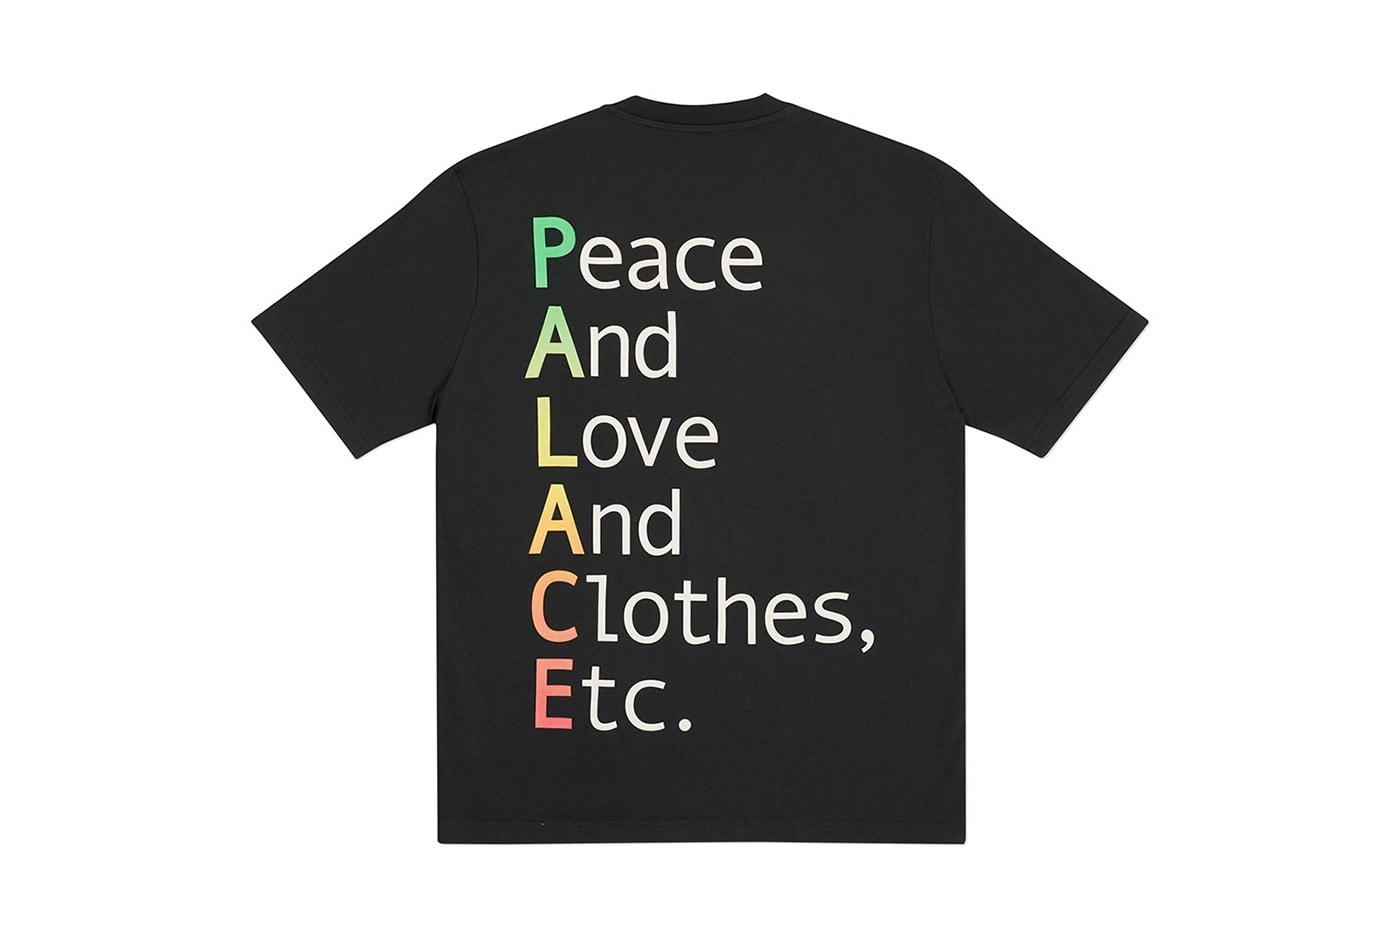 팔라스 2020 가을 티셔츠 컬렉션, 트라이퍼그, 위대한 레보스키